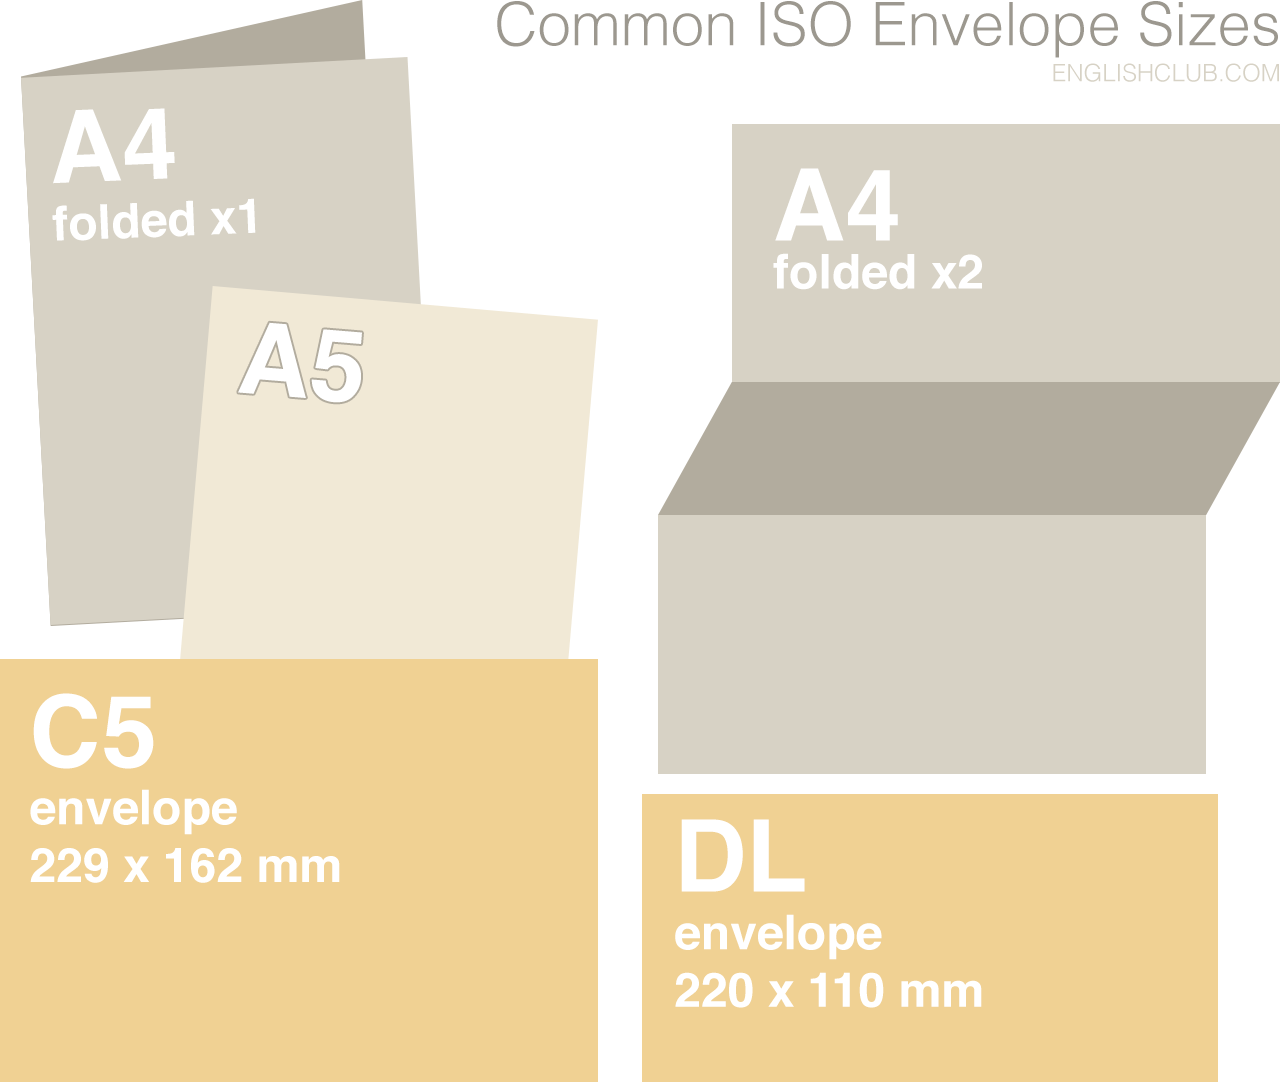 Common ISO Envelope Sizes